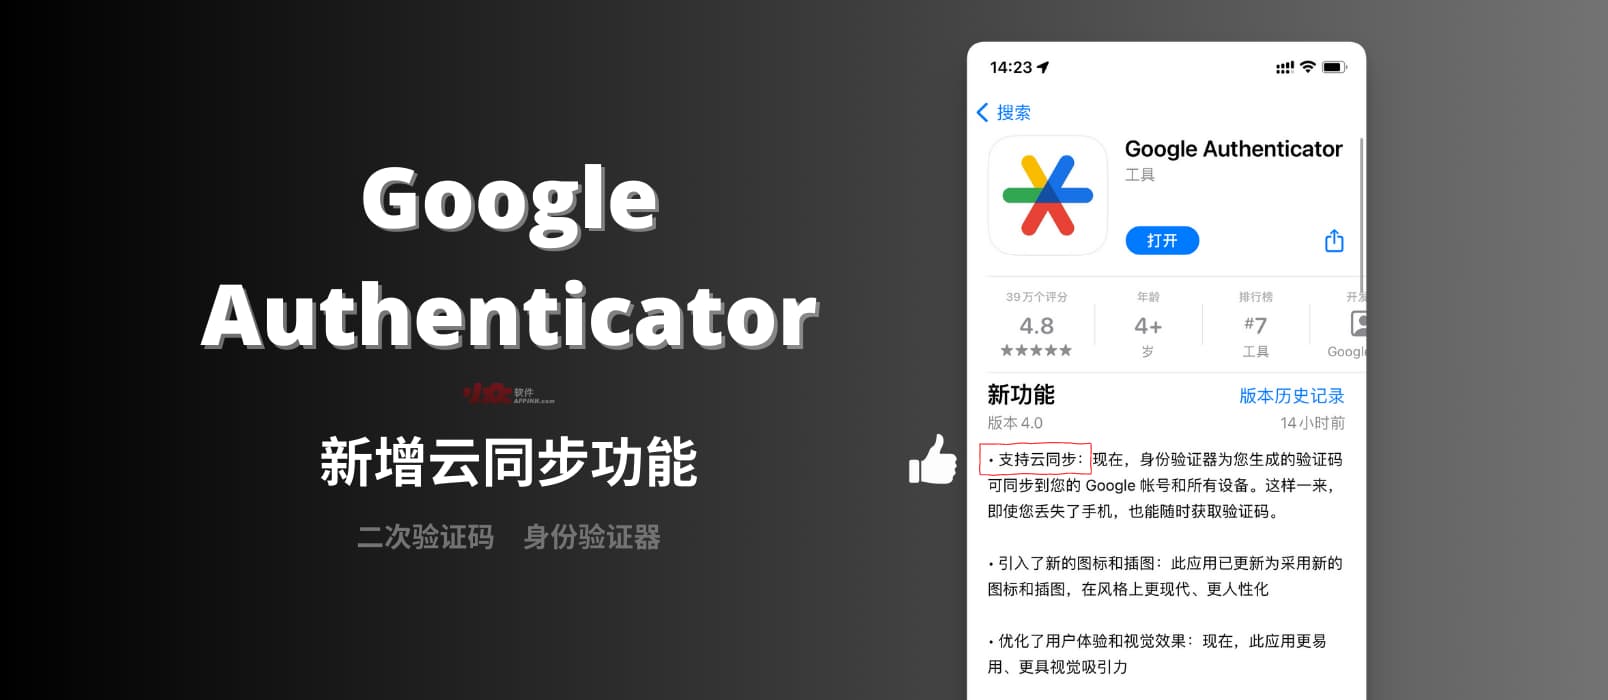 Google Authenticator 新版本发布，支持启用云同步，数据将保存在 Google 账号中。 1